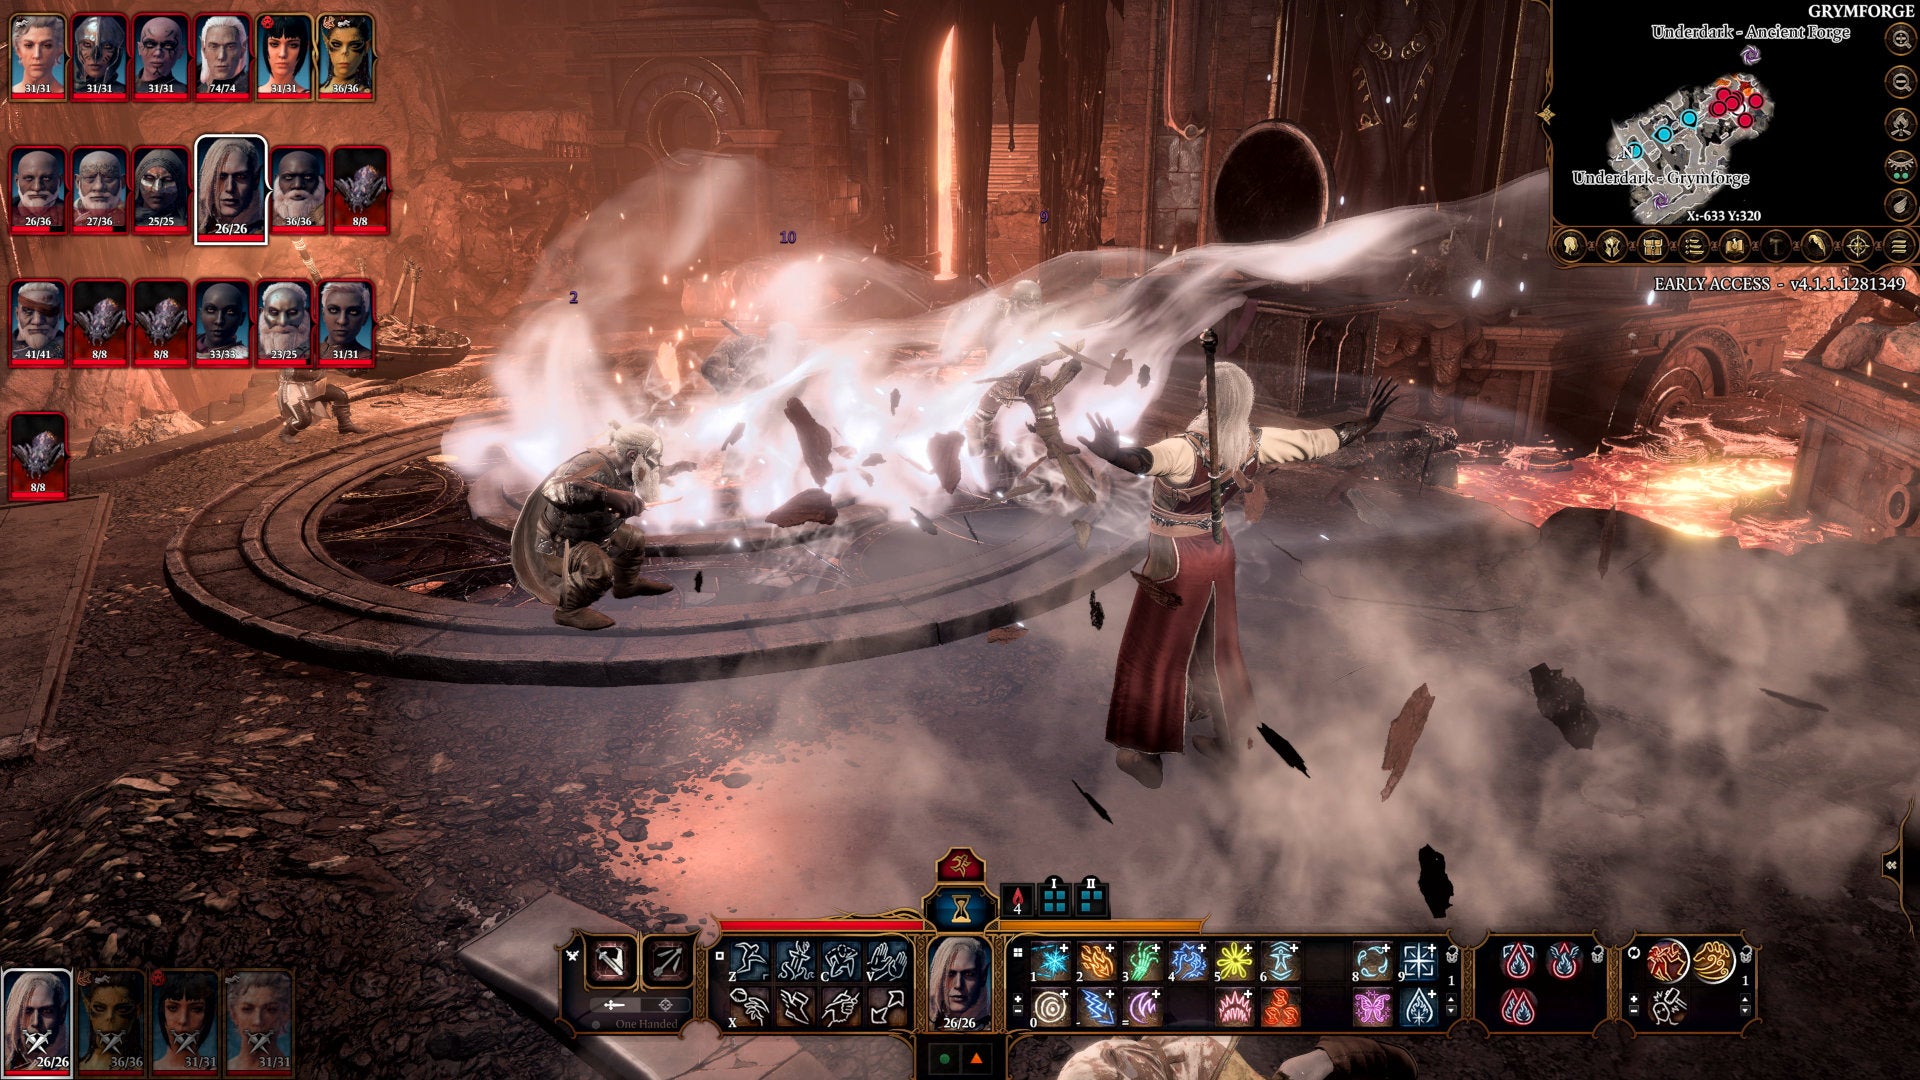 Blowing Grymforge enemies away in a Baldur's Gate 3 screenshot.